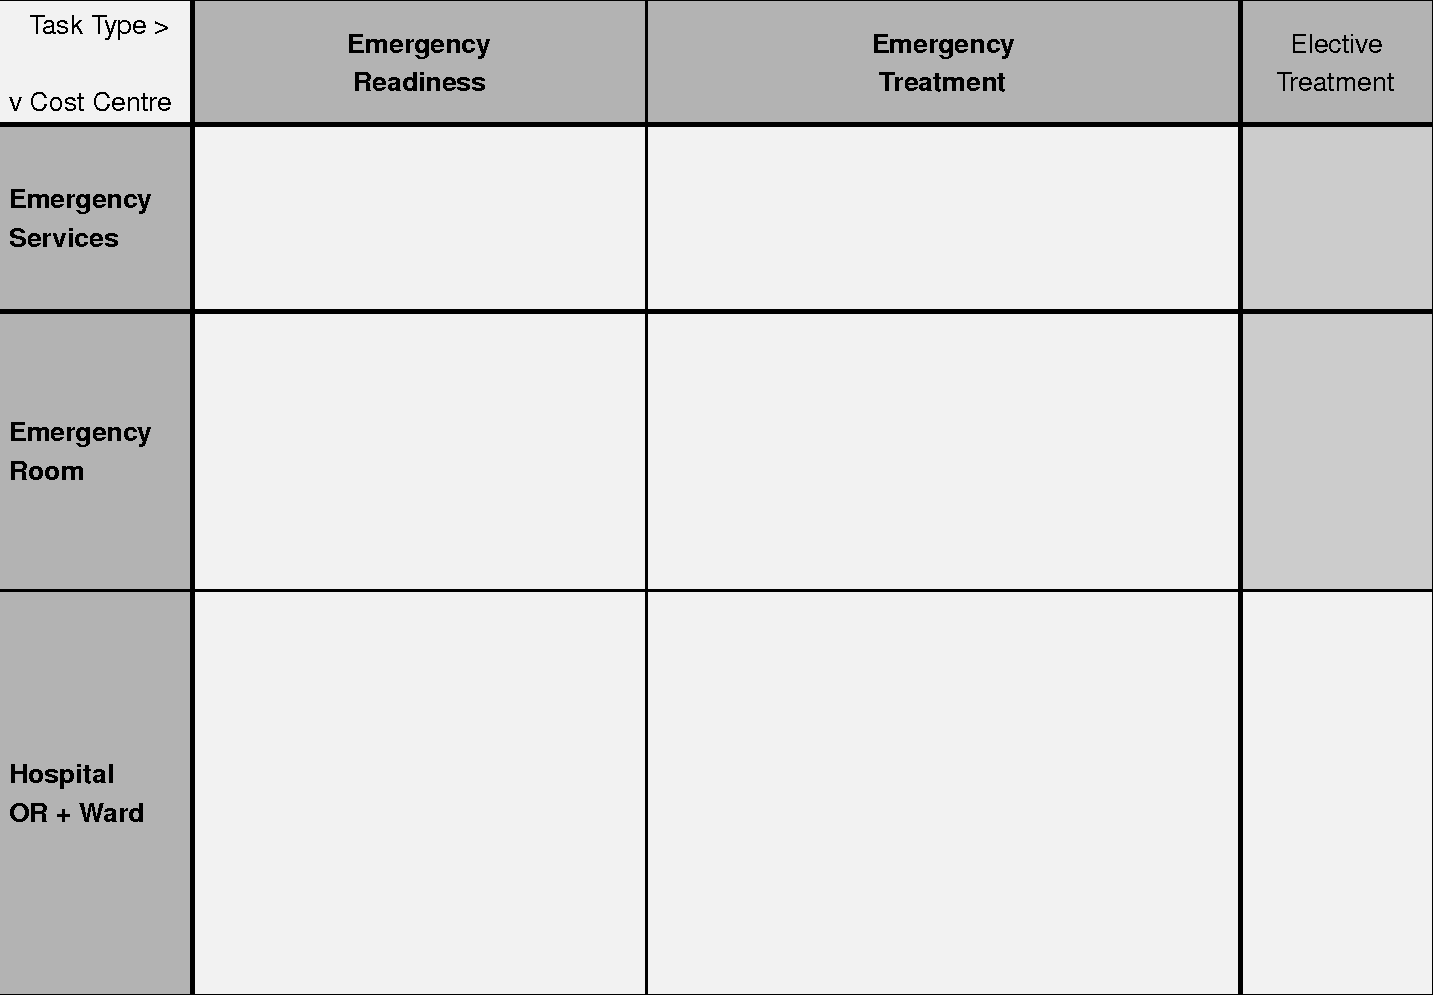 Table 1: 
Emergency Remuneration Scheme
